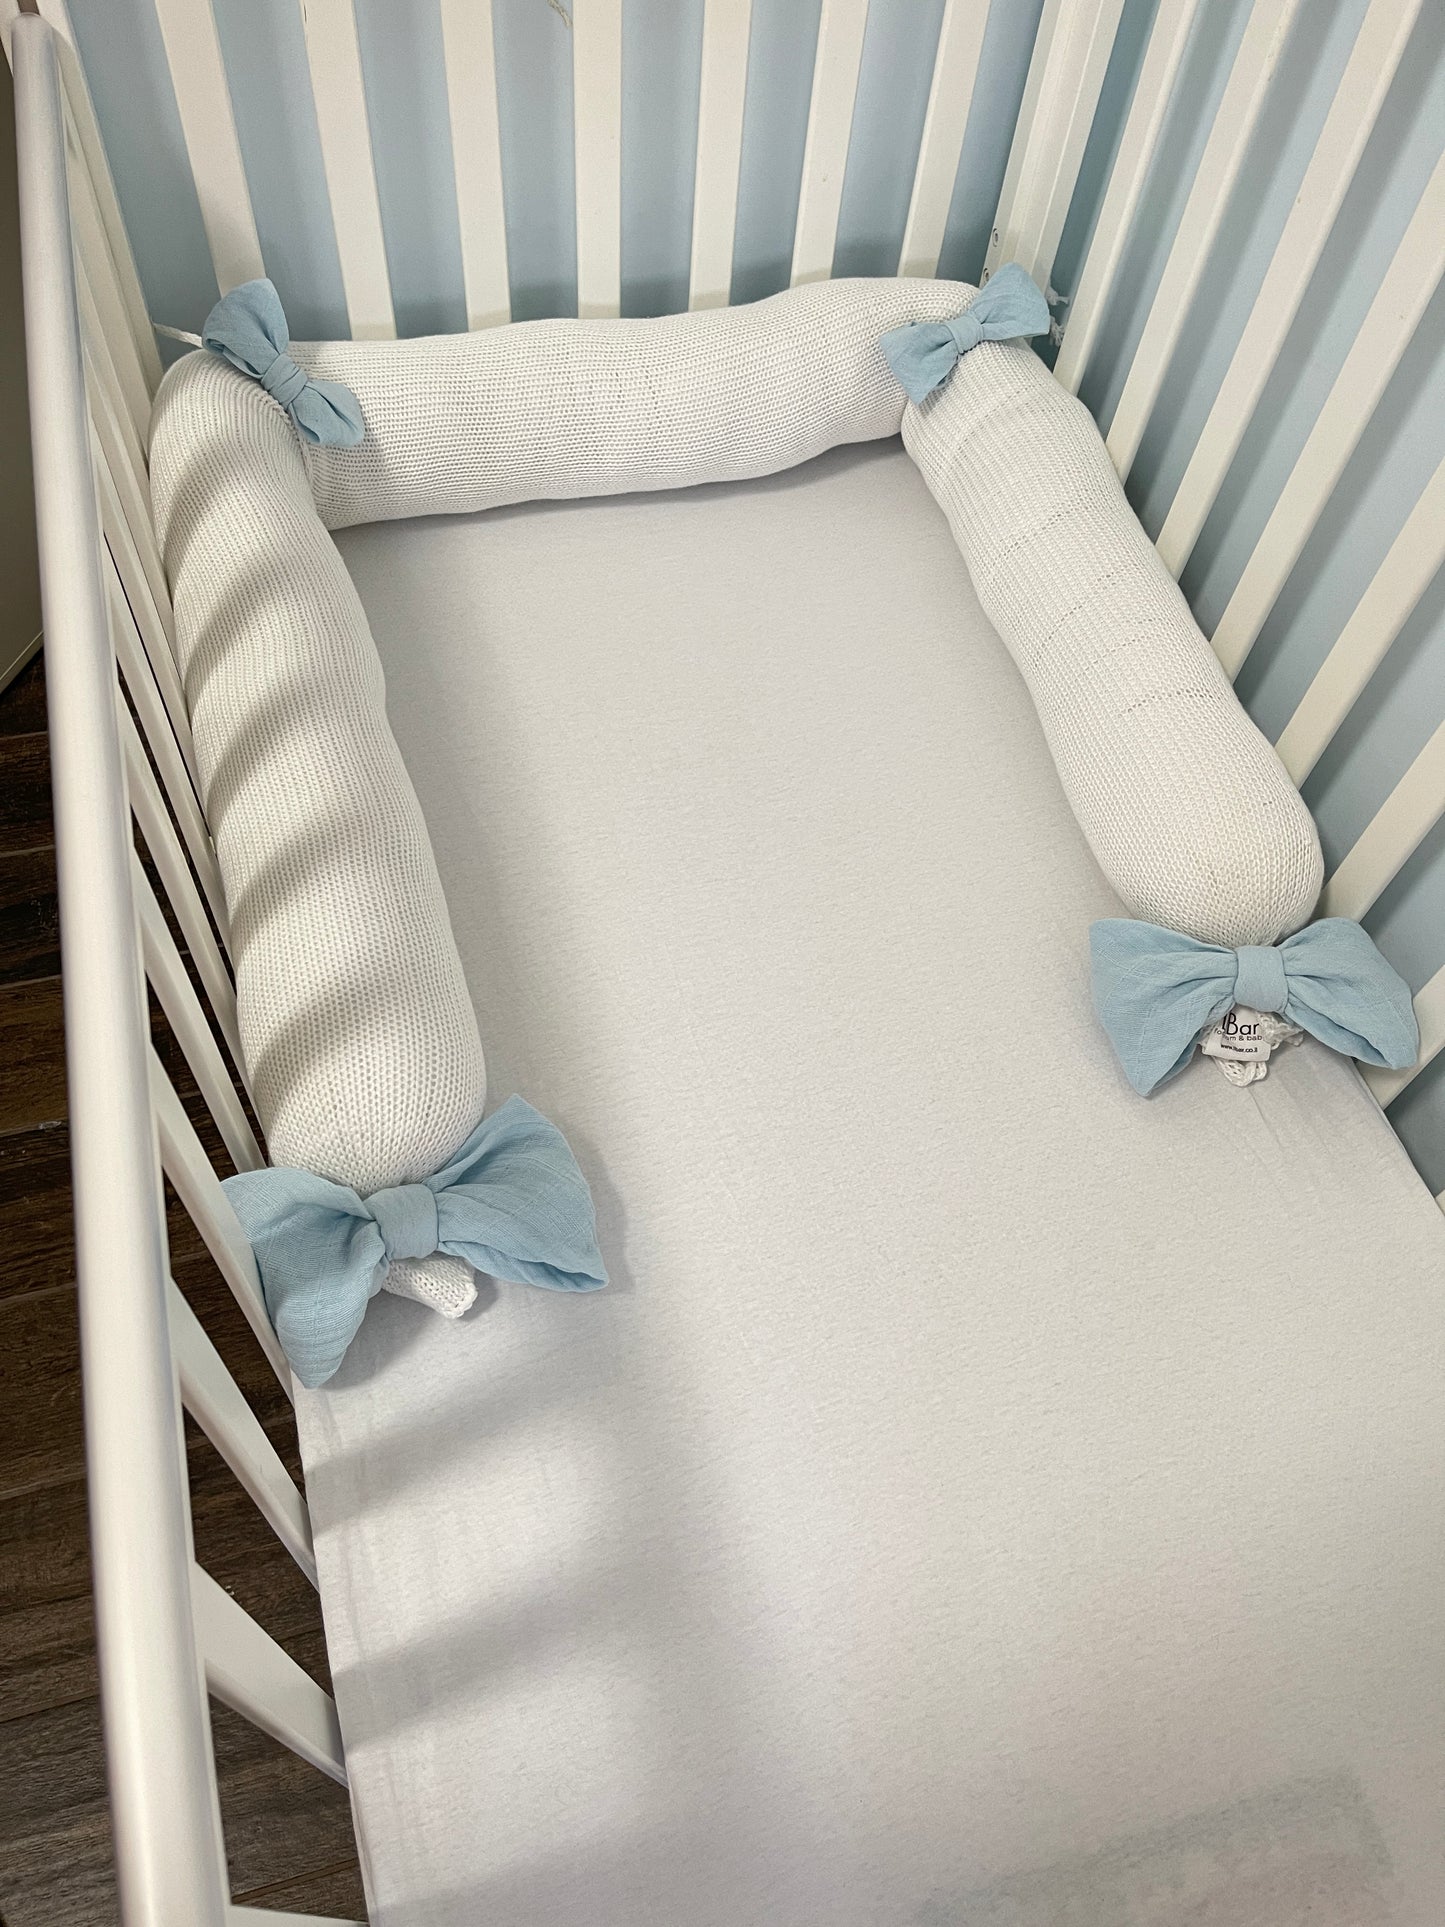 סדין למיטת תינוק - לבן